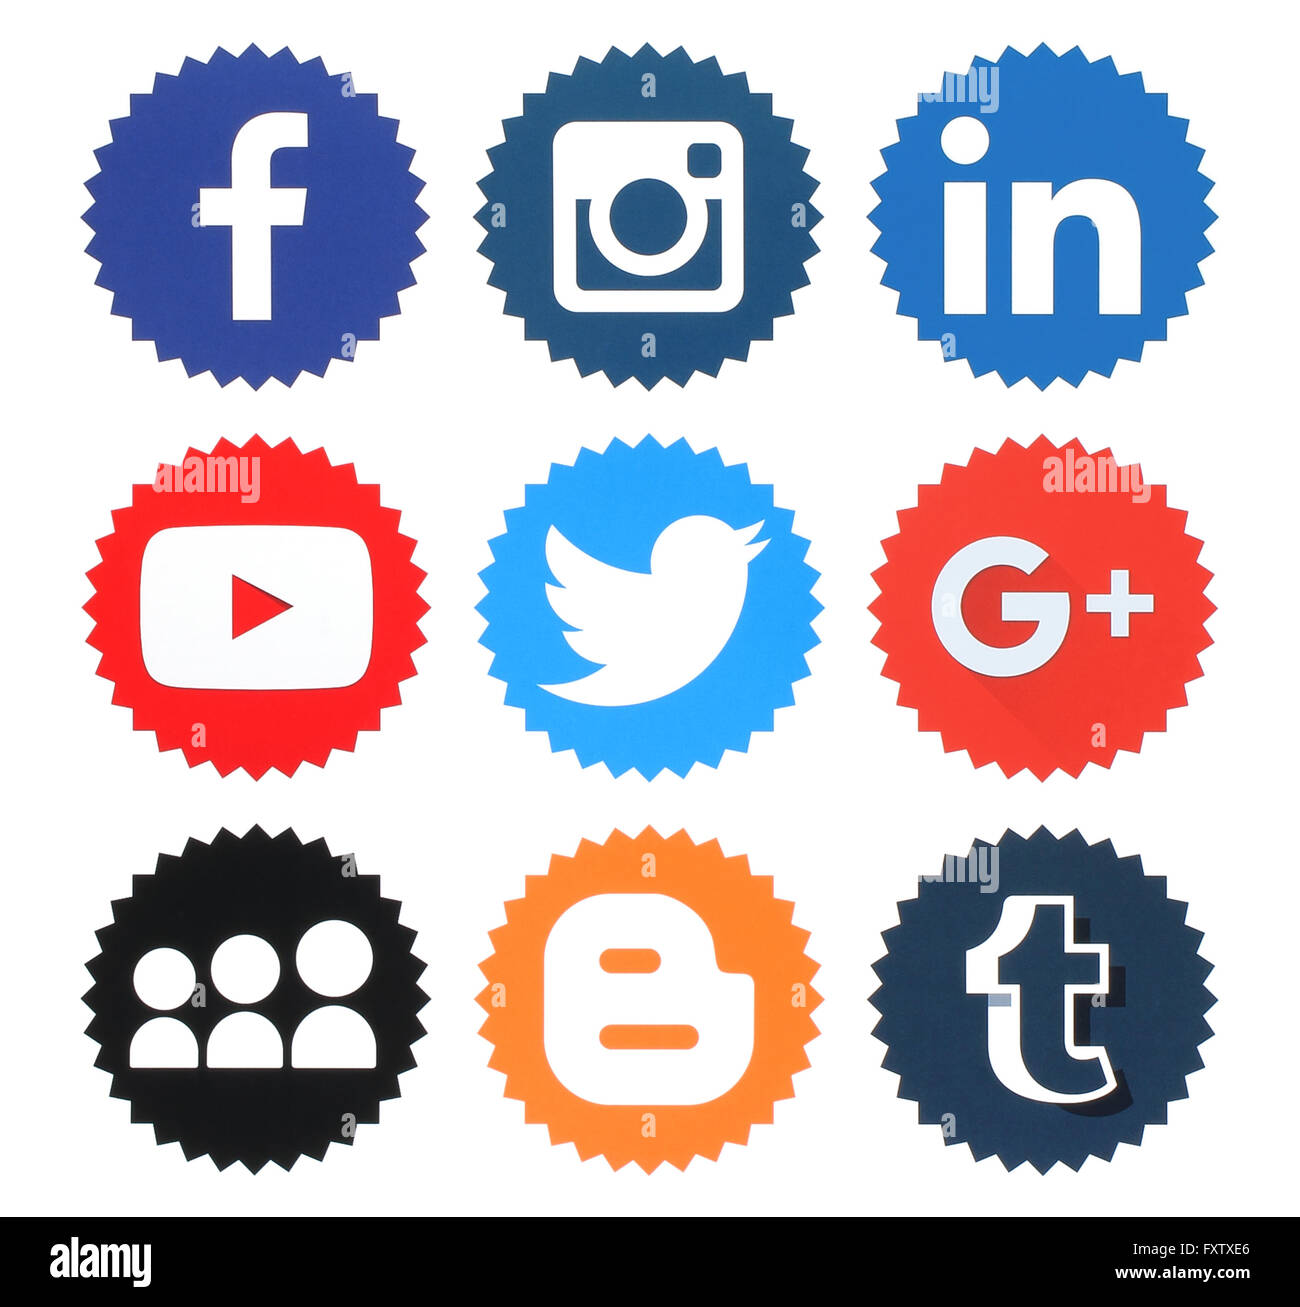 Kiev, Ukraine - 09 avril, 2016 : Collection de médias sociaux populaires logos imprimés sur du papier:Facebook, Twitter, Google Plus Banque D'Images